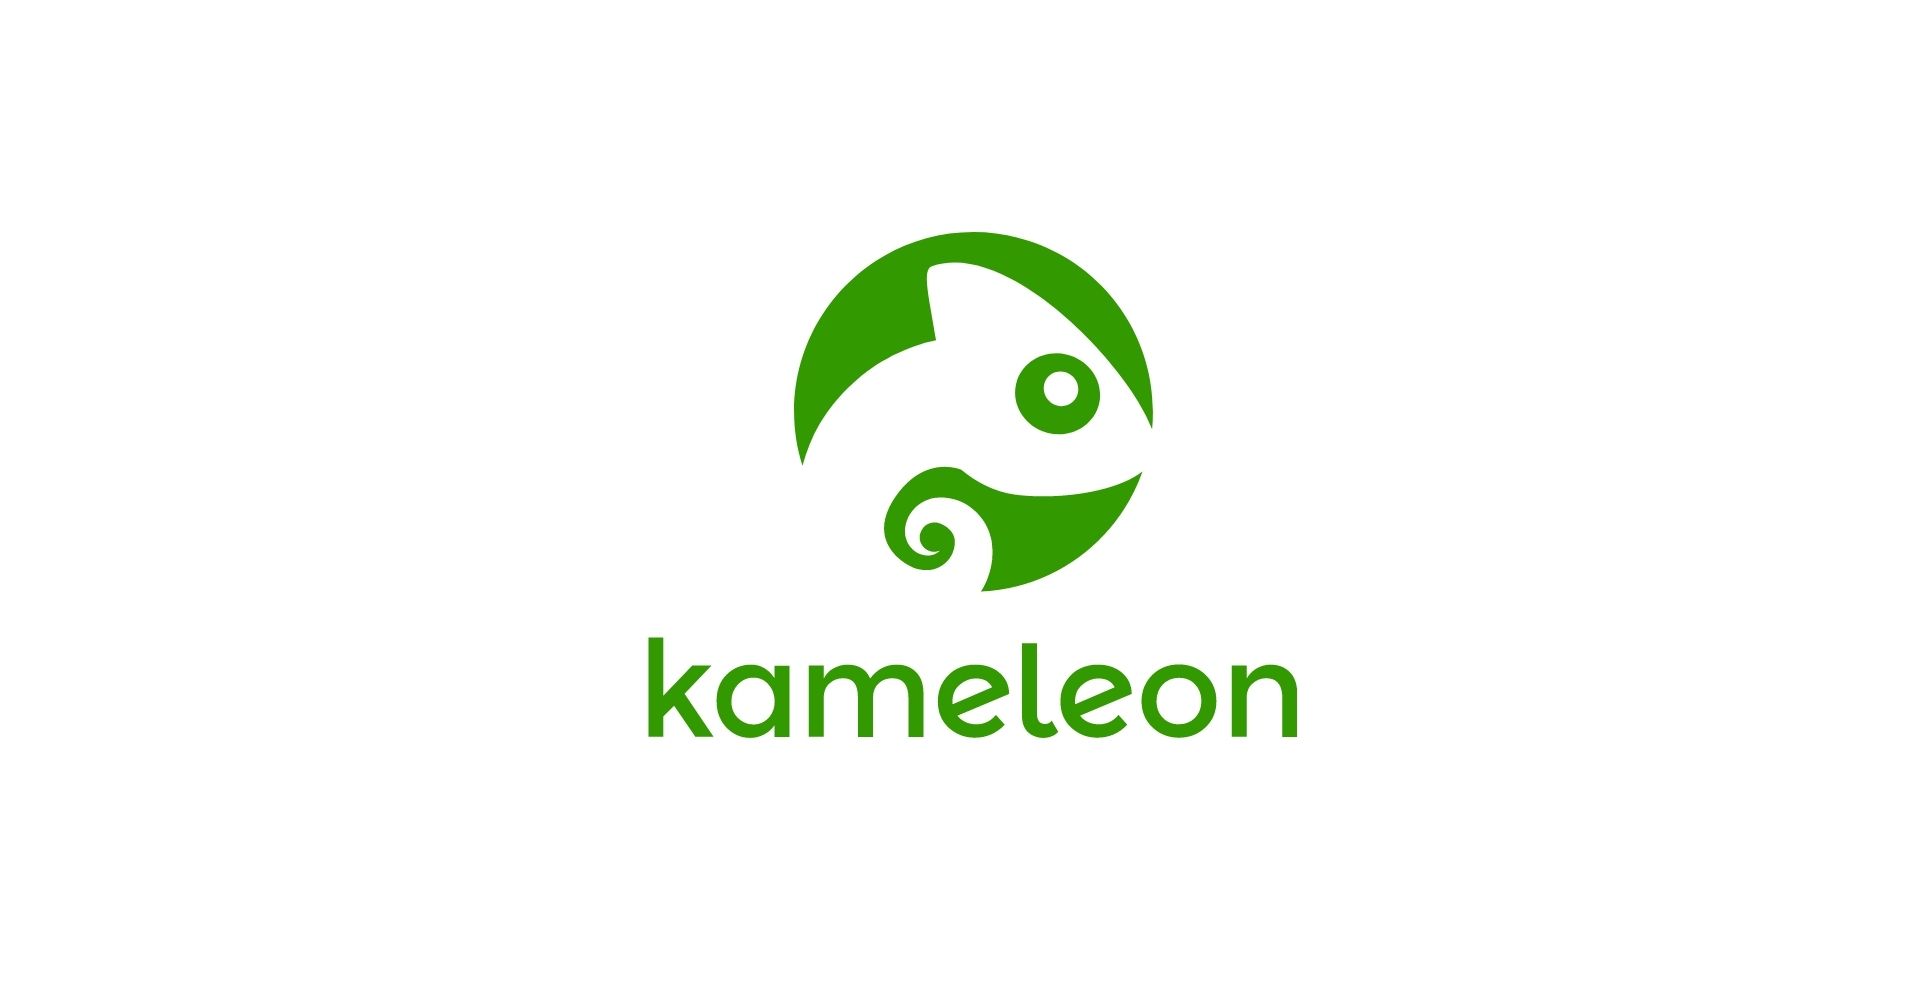 Document House investoi miljoona euroa Kameleon-tuotteeseensa Business Finlandin tukemana